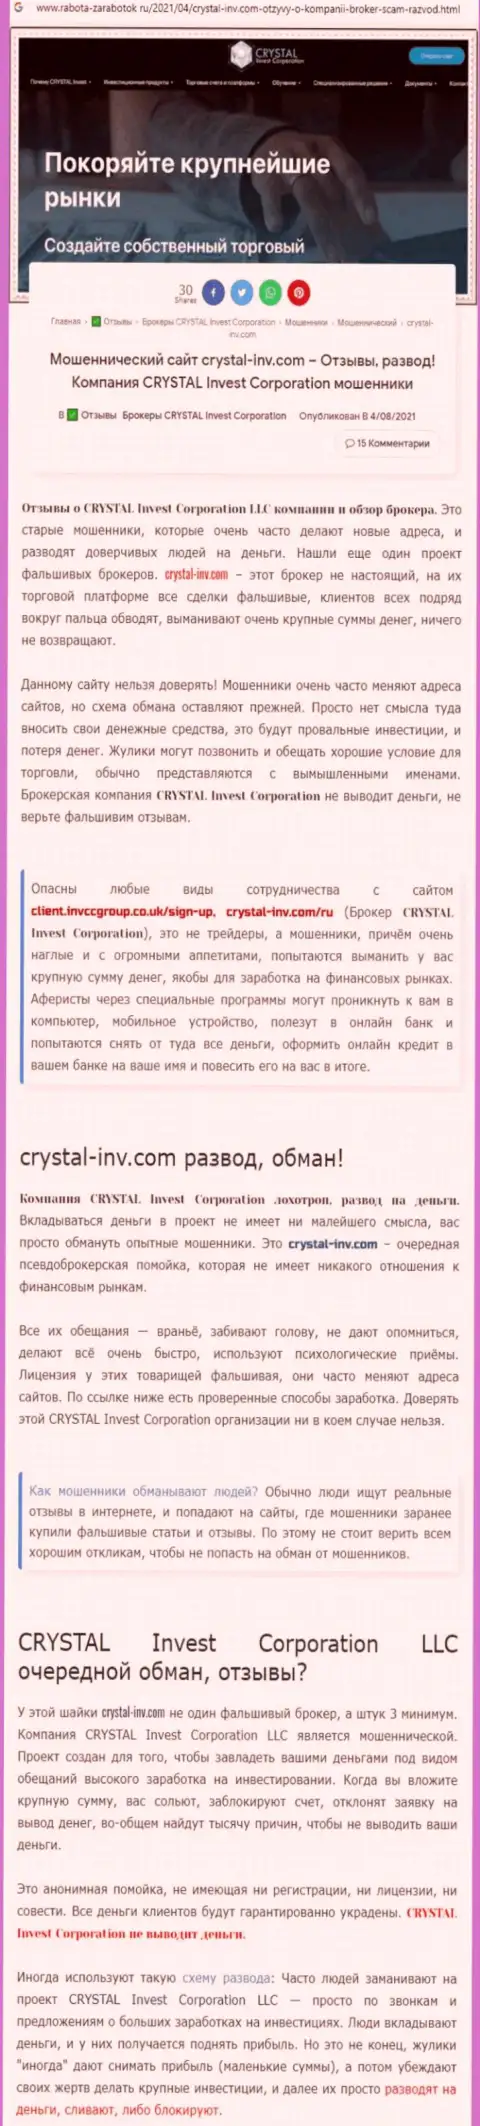 Материал, разоблачающий организацию Crystal Invest, который взят с веб-сайта с обзорами разных организаций